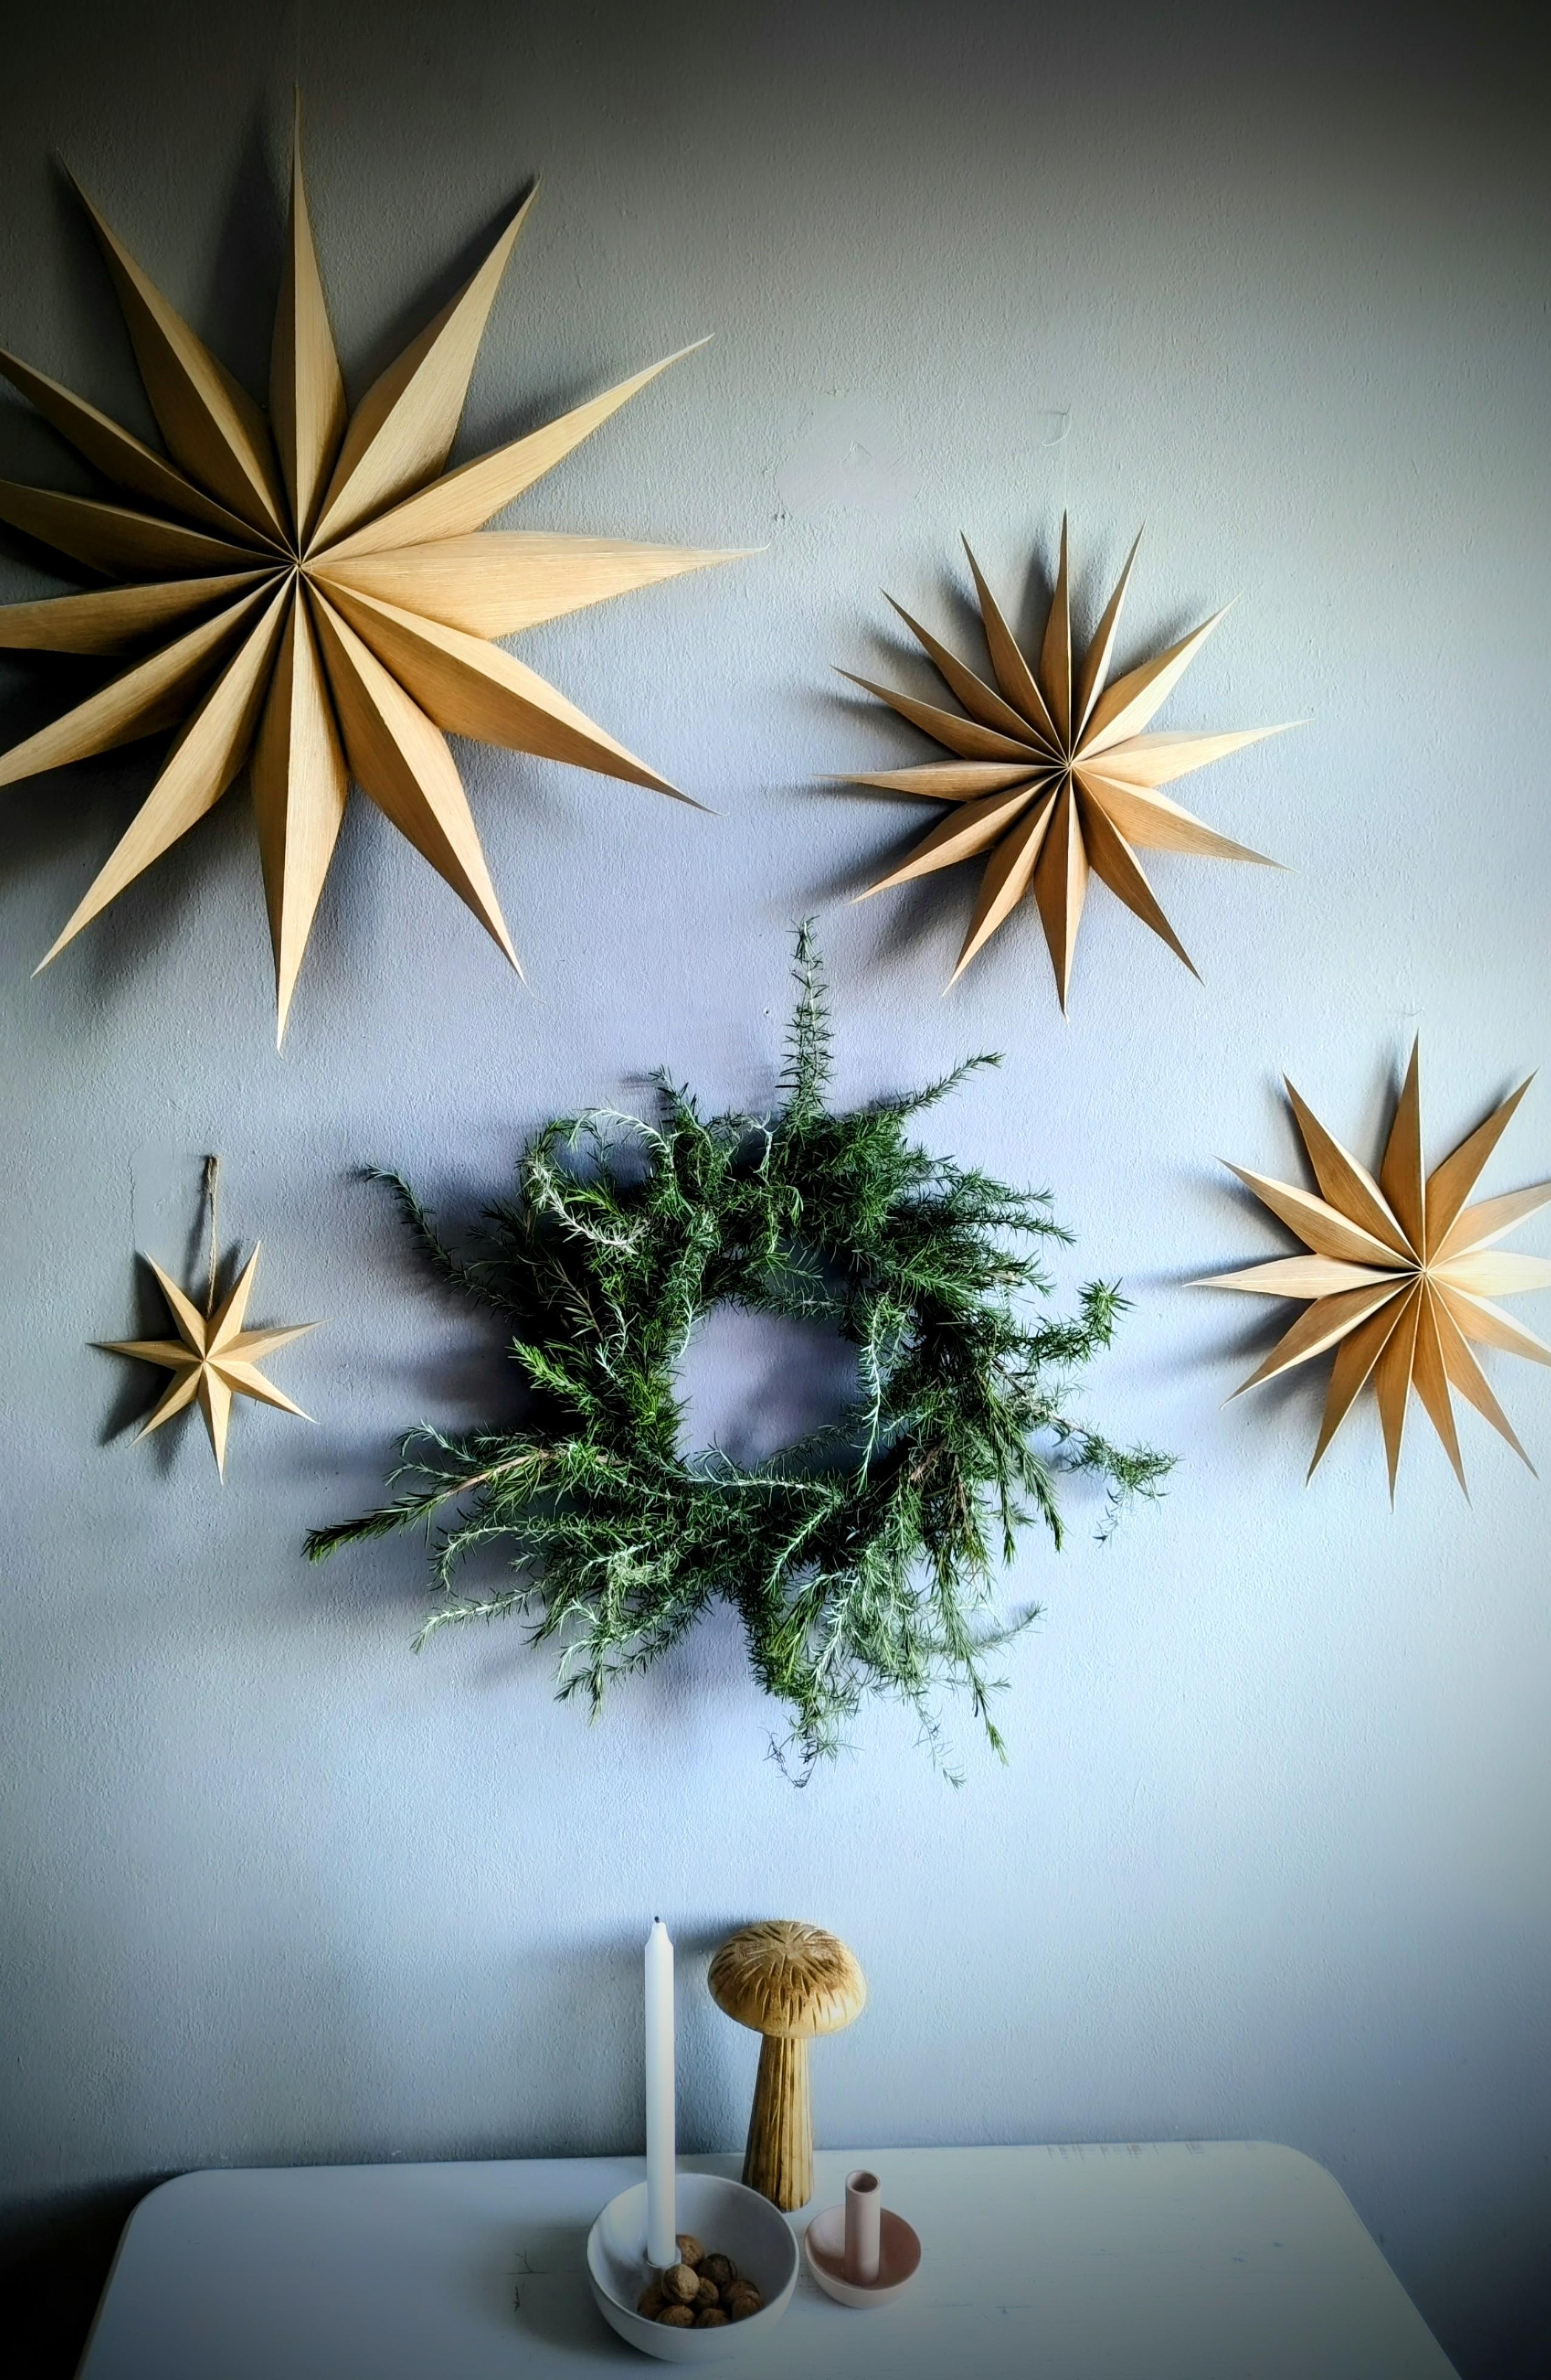 #Kranz # Rosmarin #Adventszeit
#Küchenwand mit Sternen
